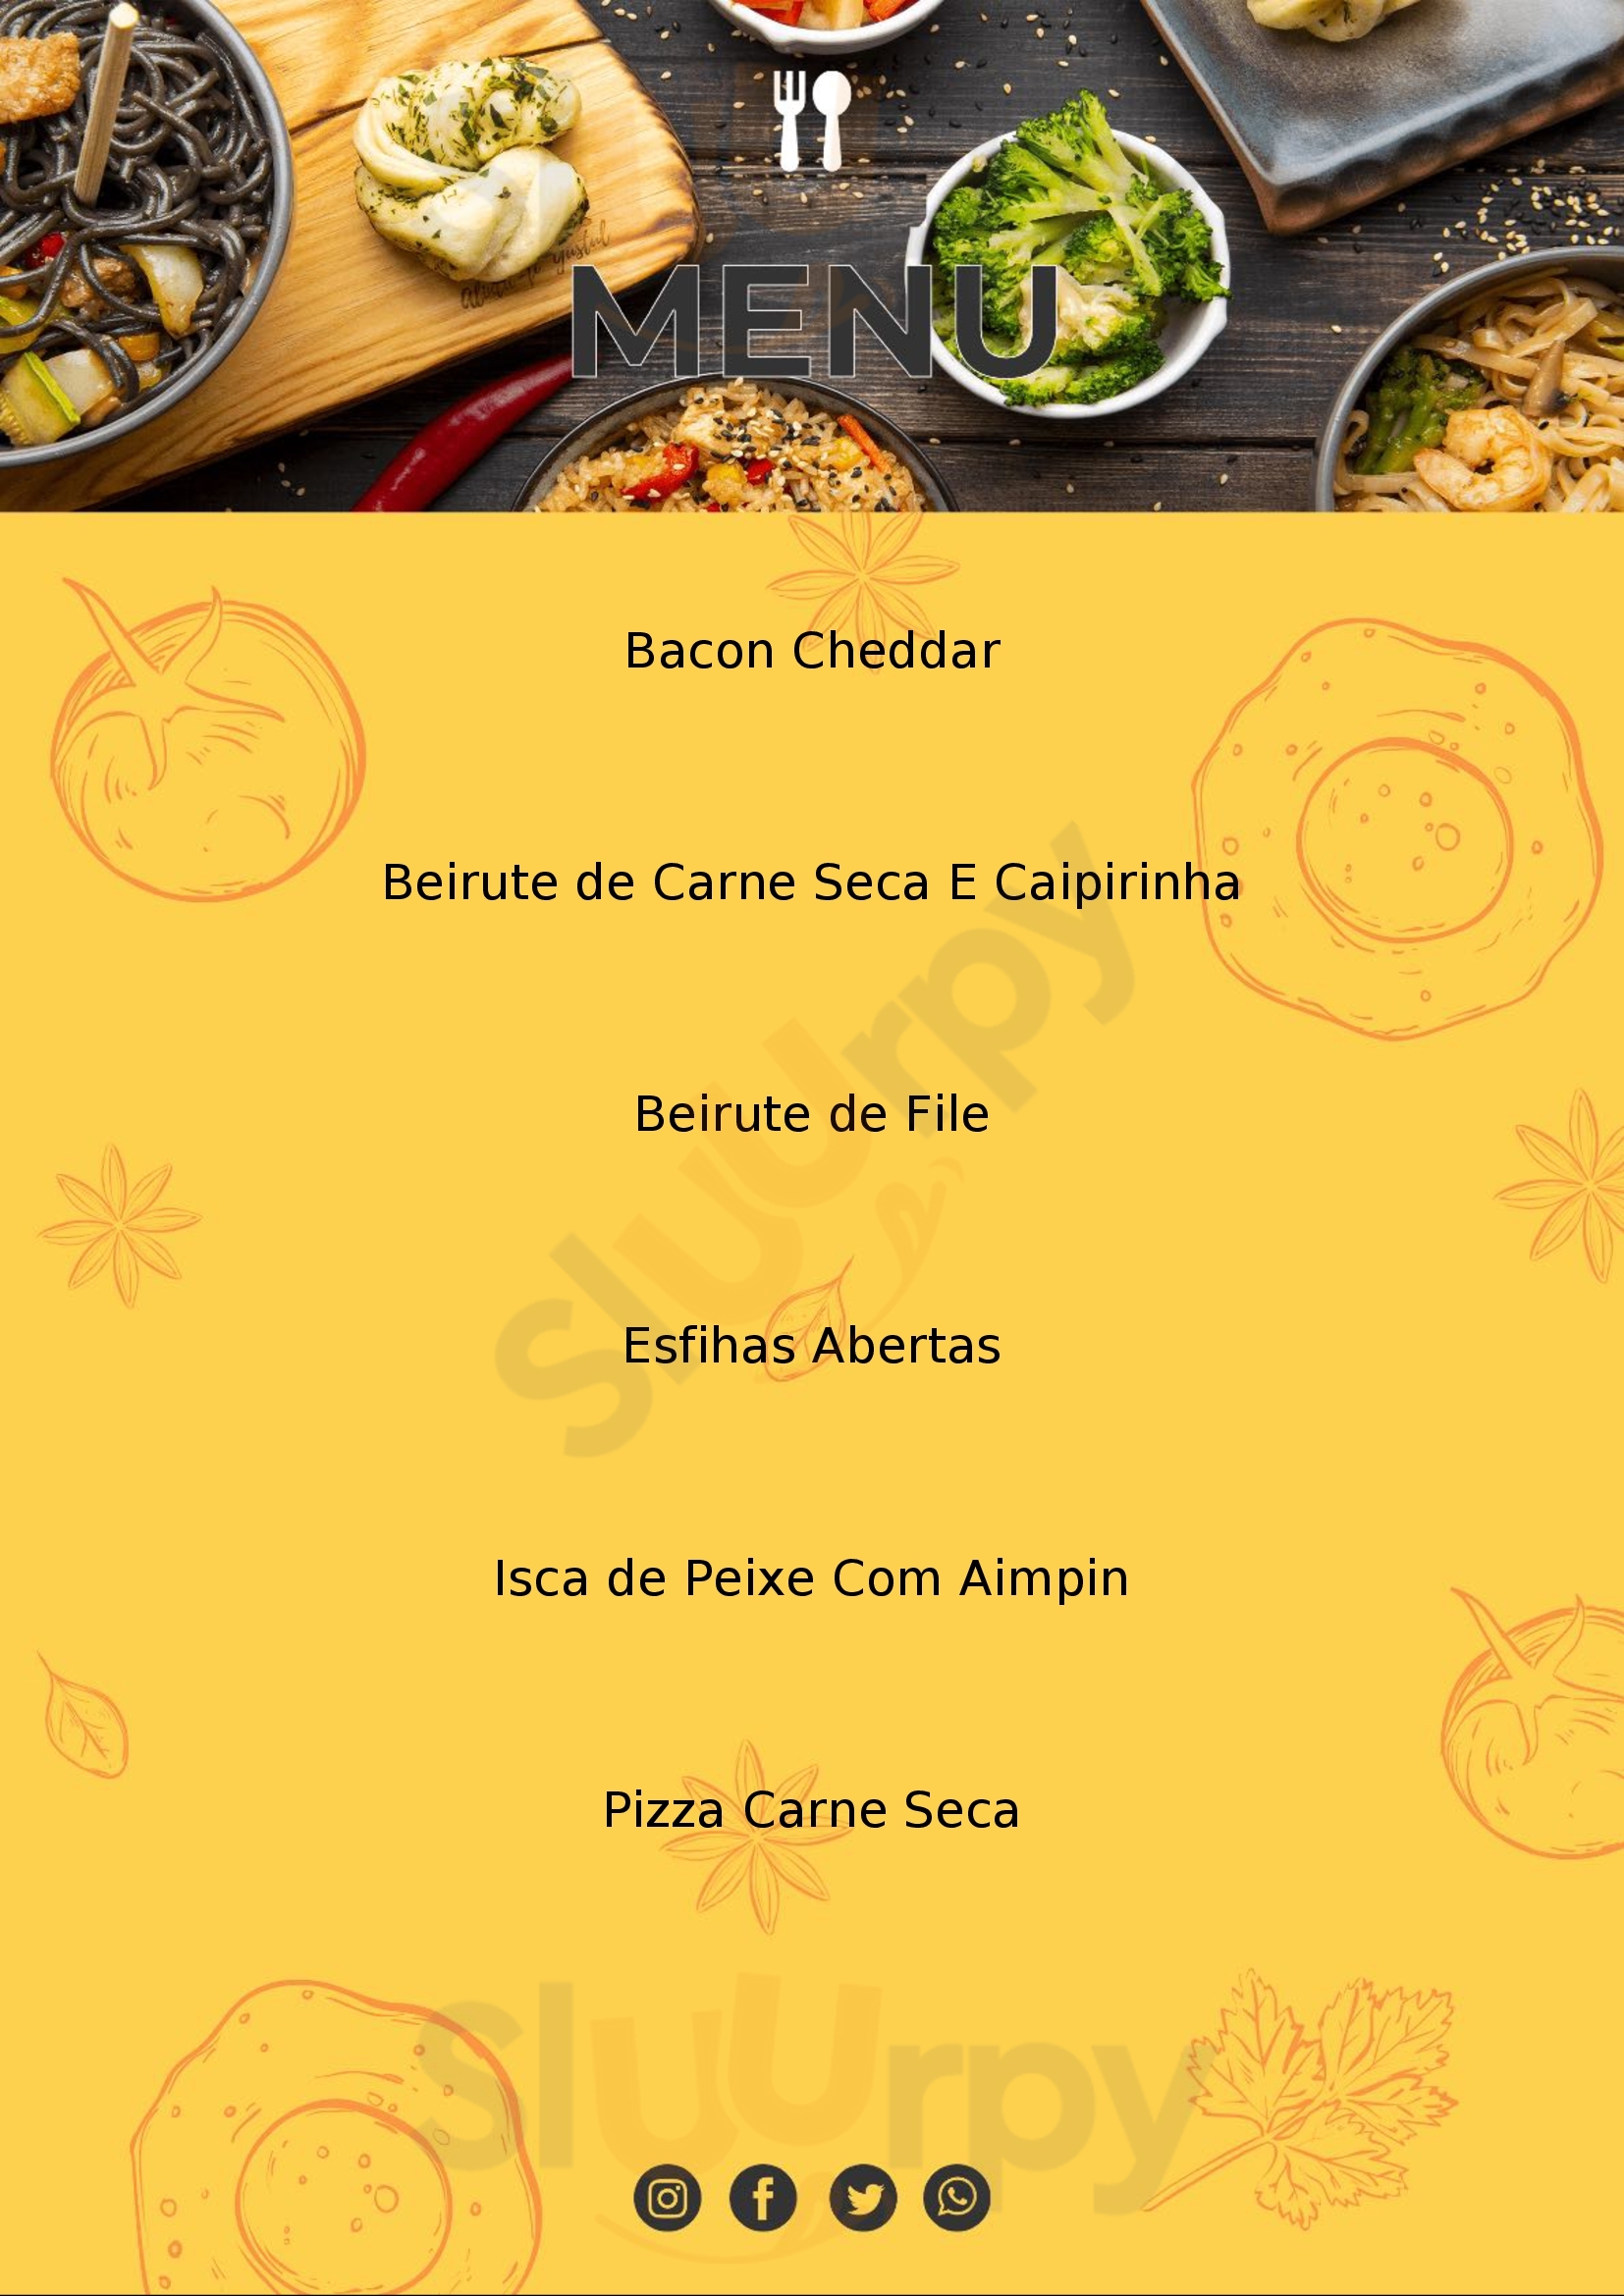 Bora Pizza Bar Teixeira de Freitas Menu - 1